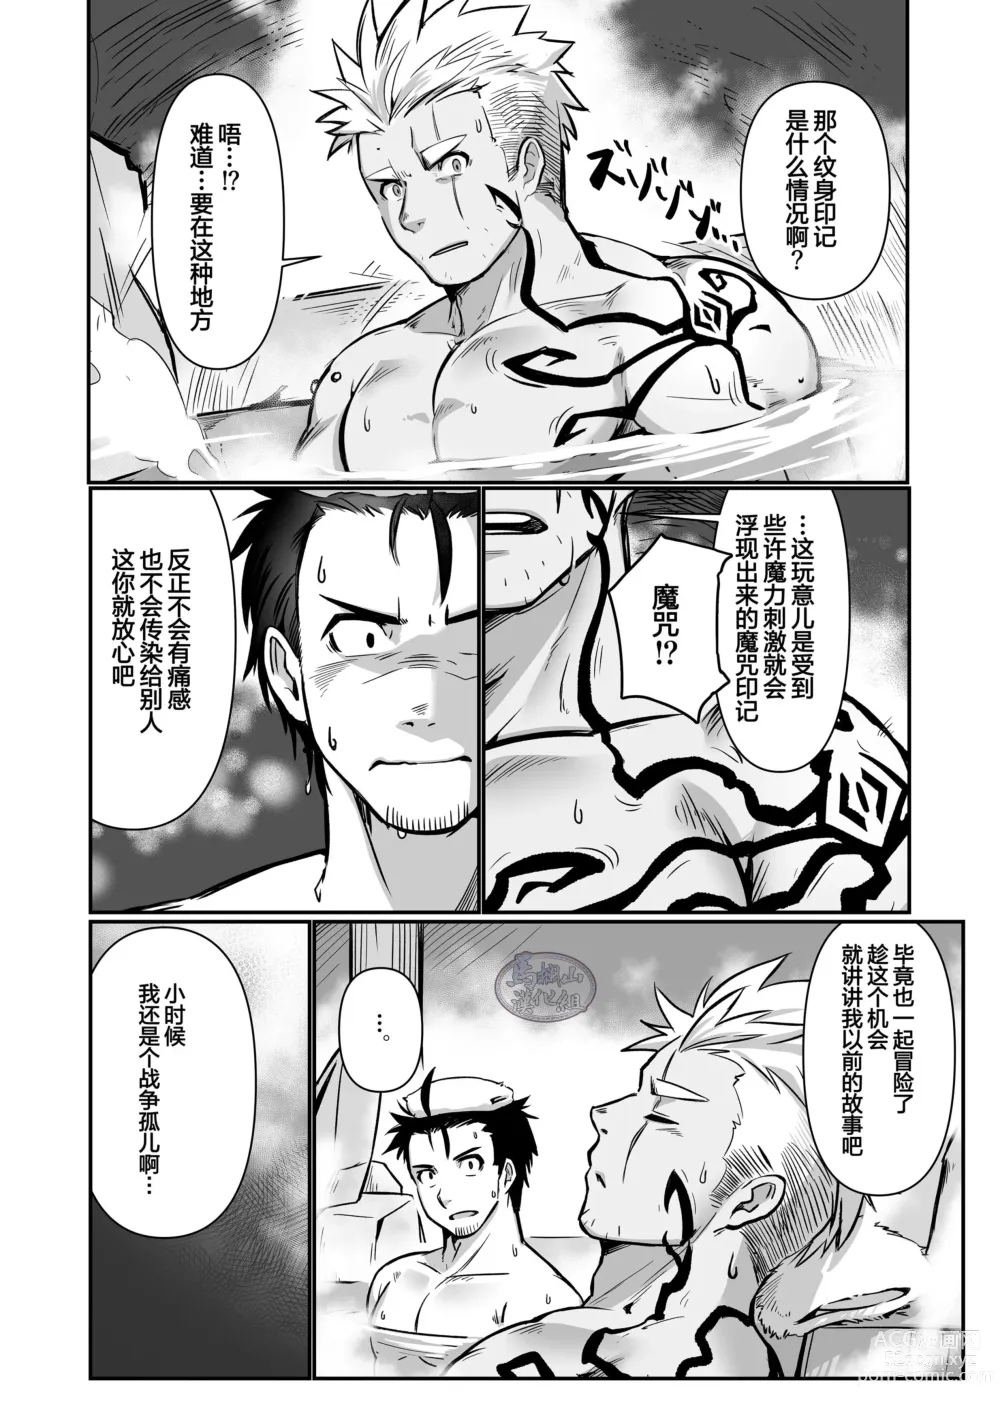 Page 10 of doujinshi 关于我在转生之后身边全是肌肉男的奇闻轶事2